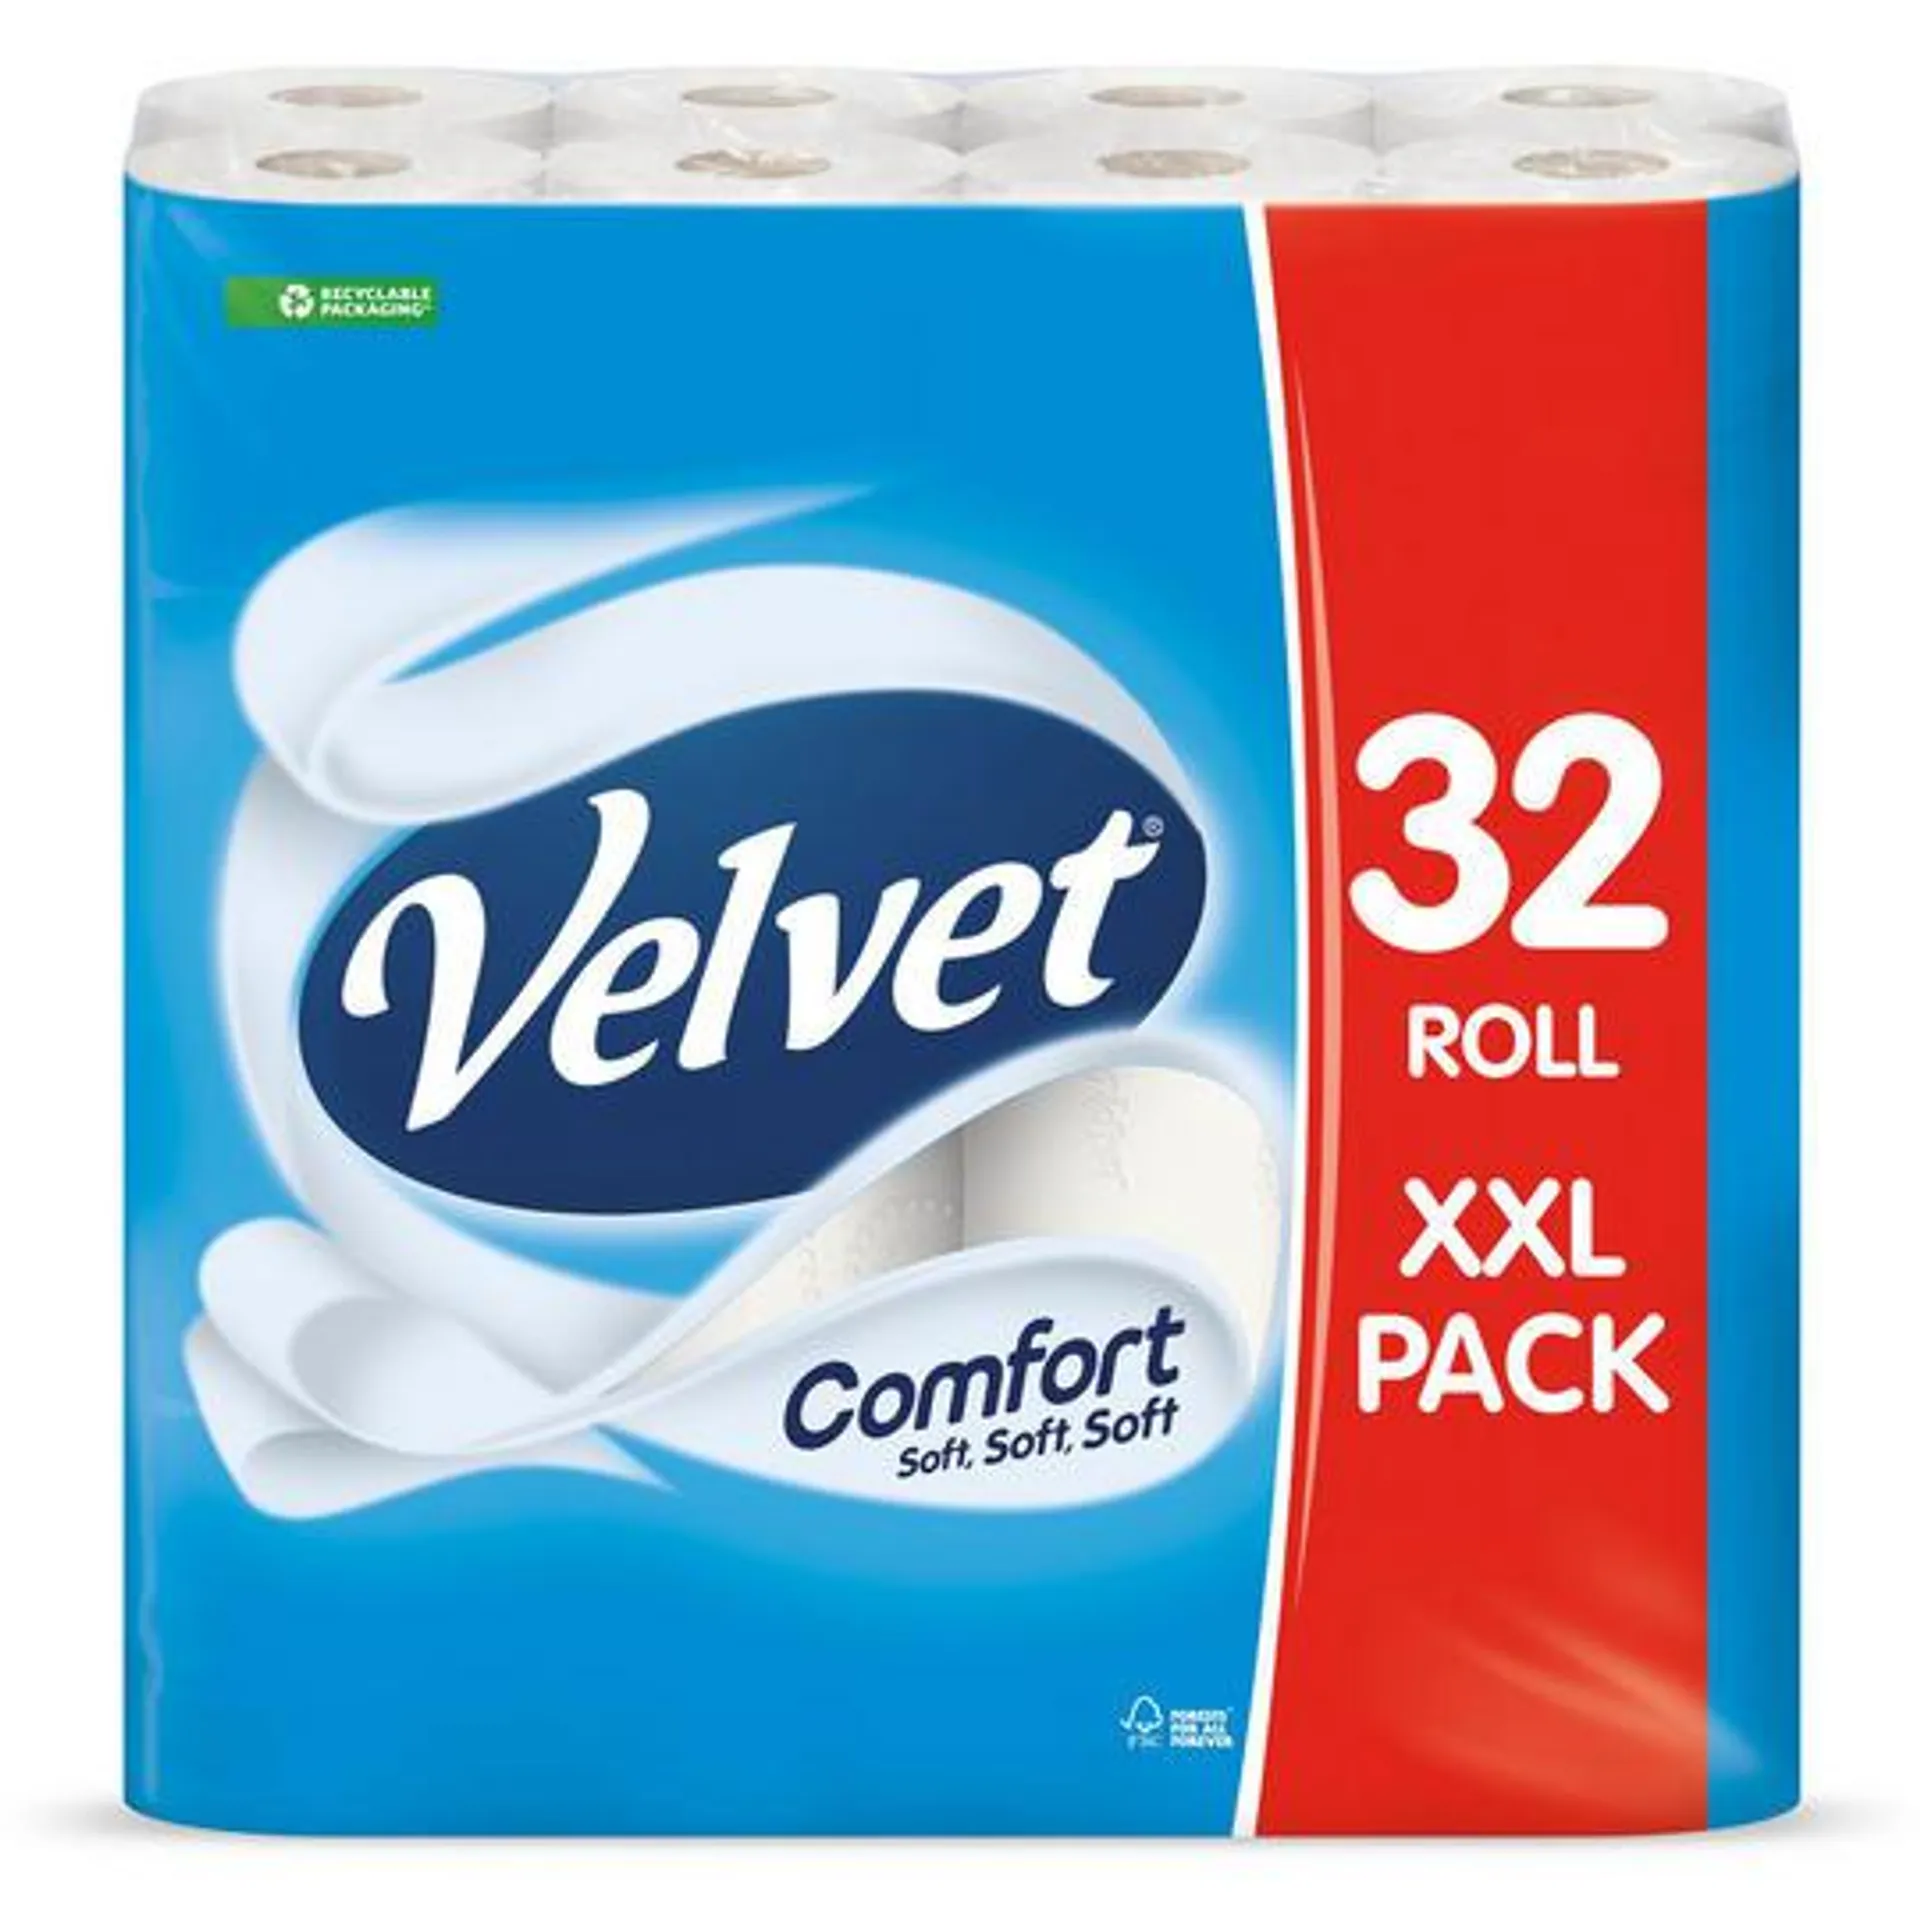 Velvet Comfort 32 Toilet Rolls